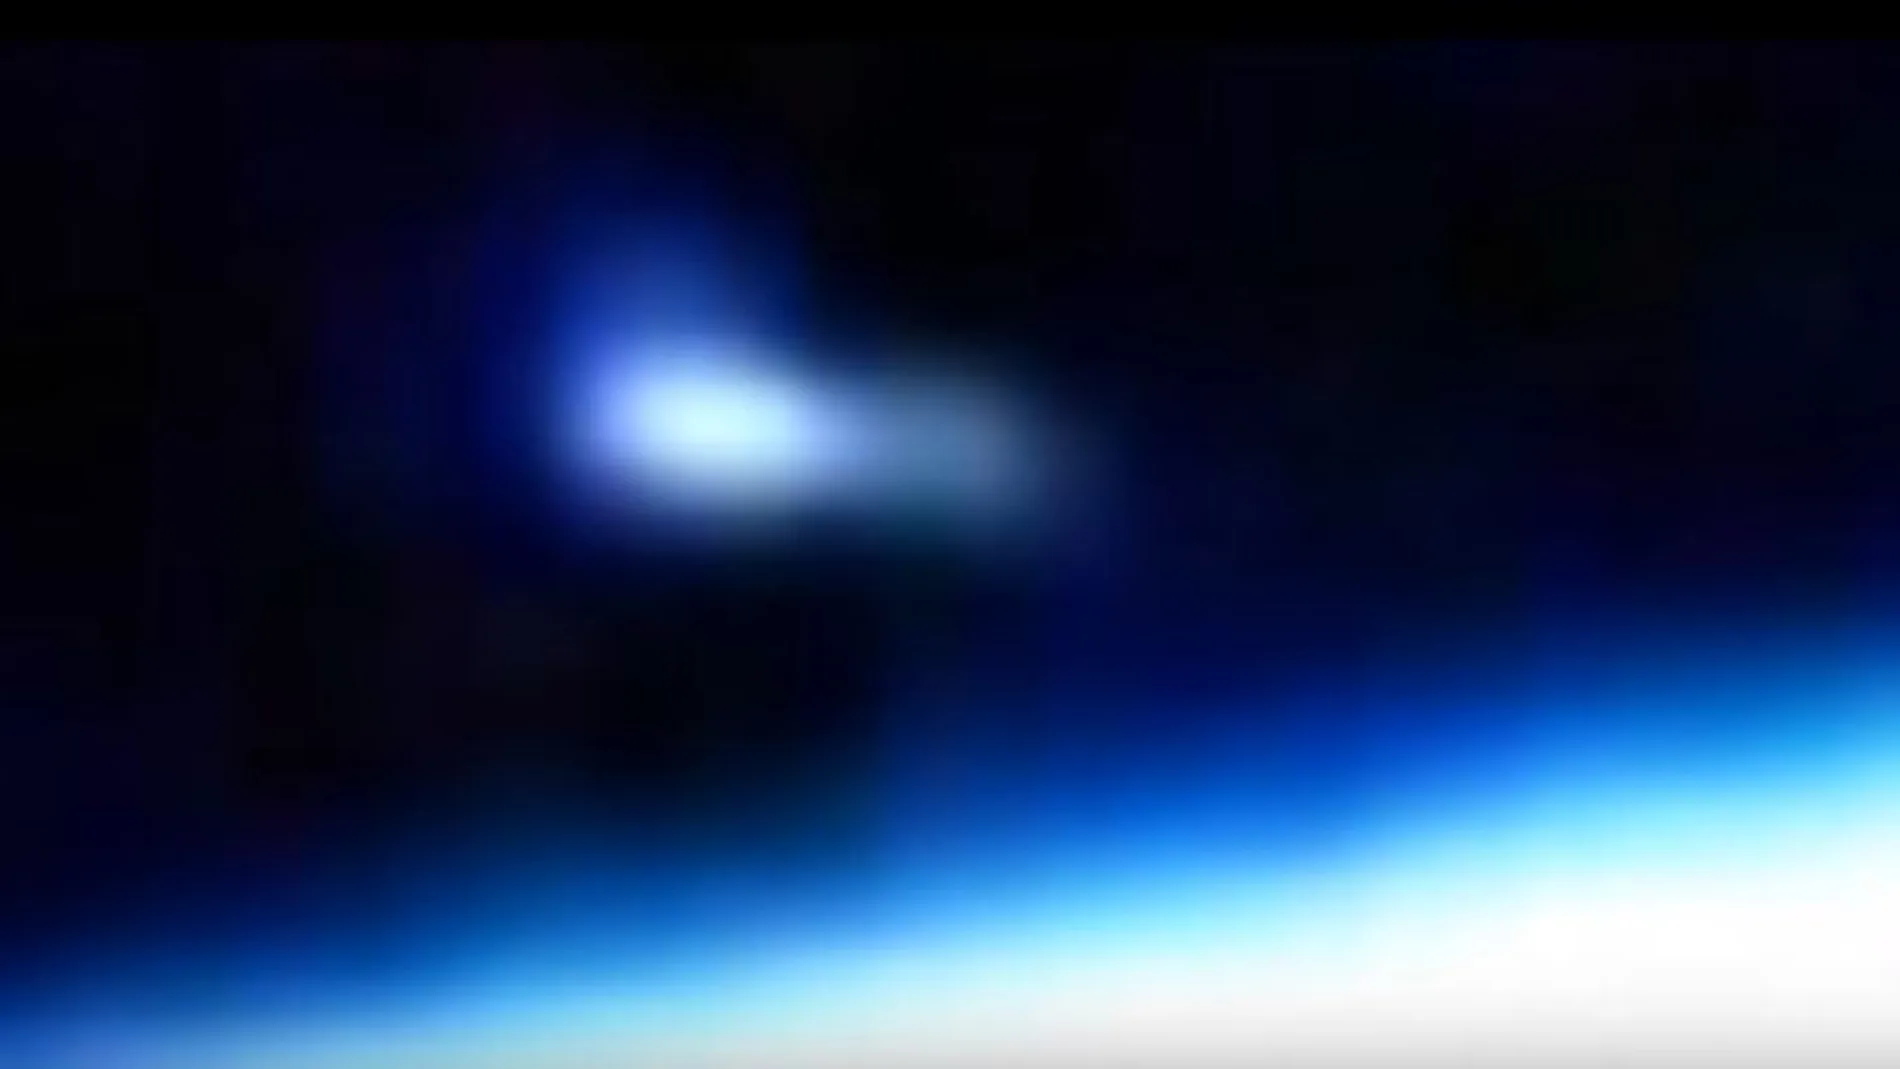 ¿Una nave espacial sobrevolando la Tierra?